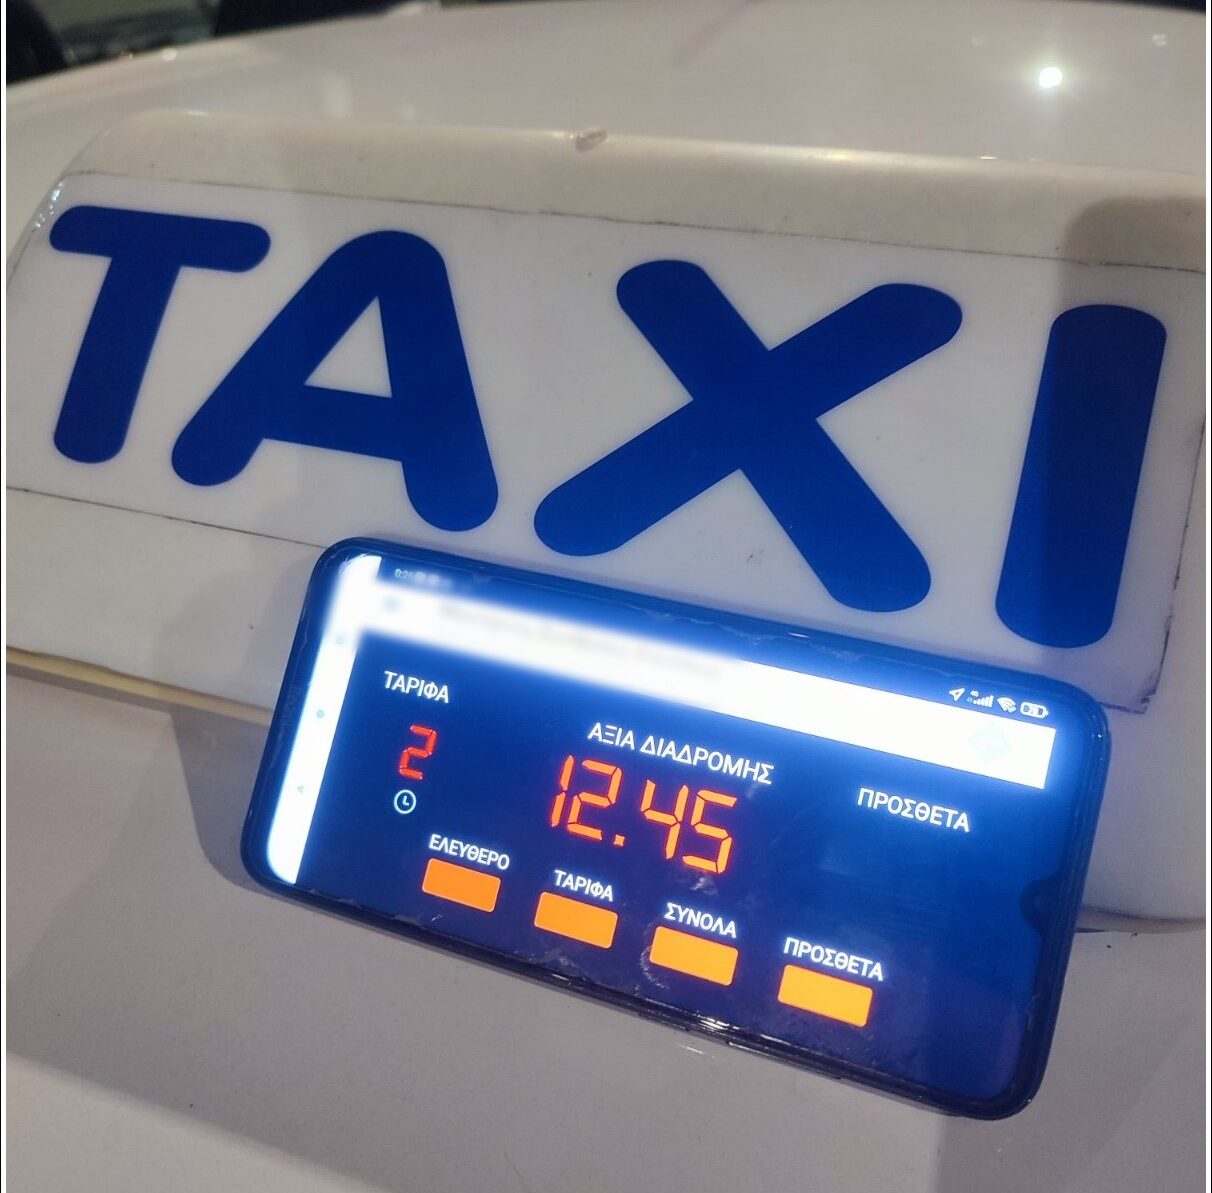 Έλεγχοι της τροχαίας Θεσσαλονίκης σε ταξί- Παραβάσεις για μη χρήση ταξίμετρου